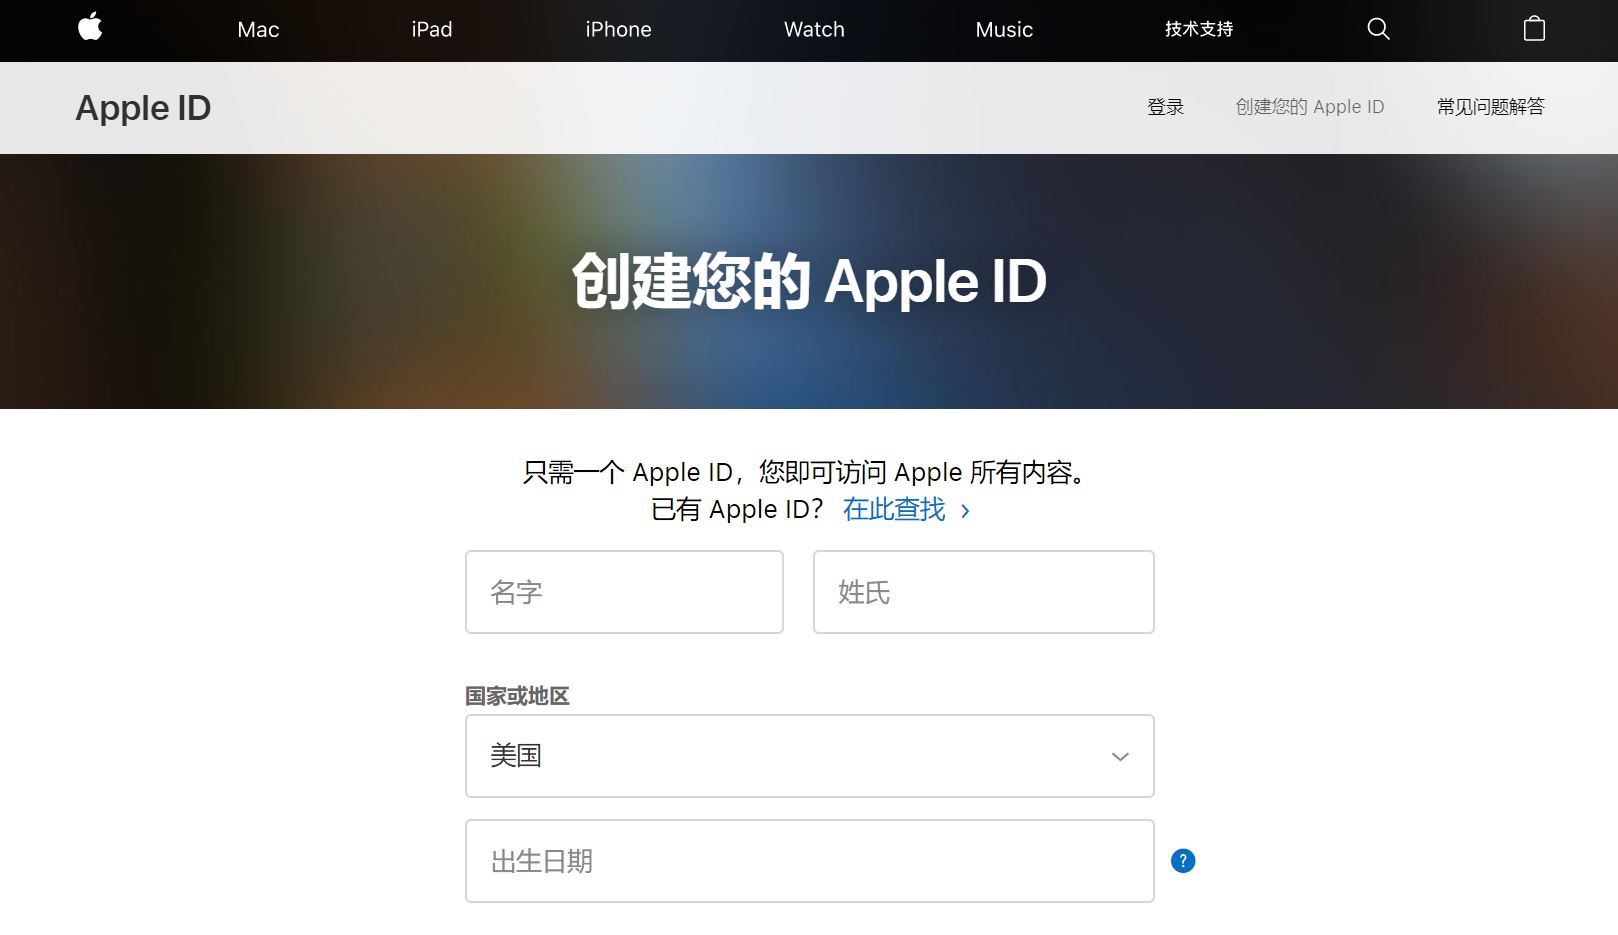 注册美区 Apple ID 帐号的终极指南-Ceacer 网安